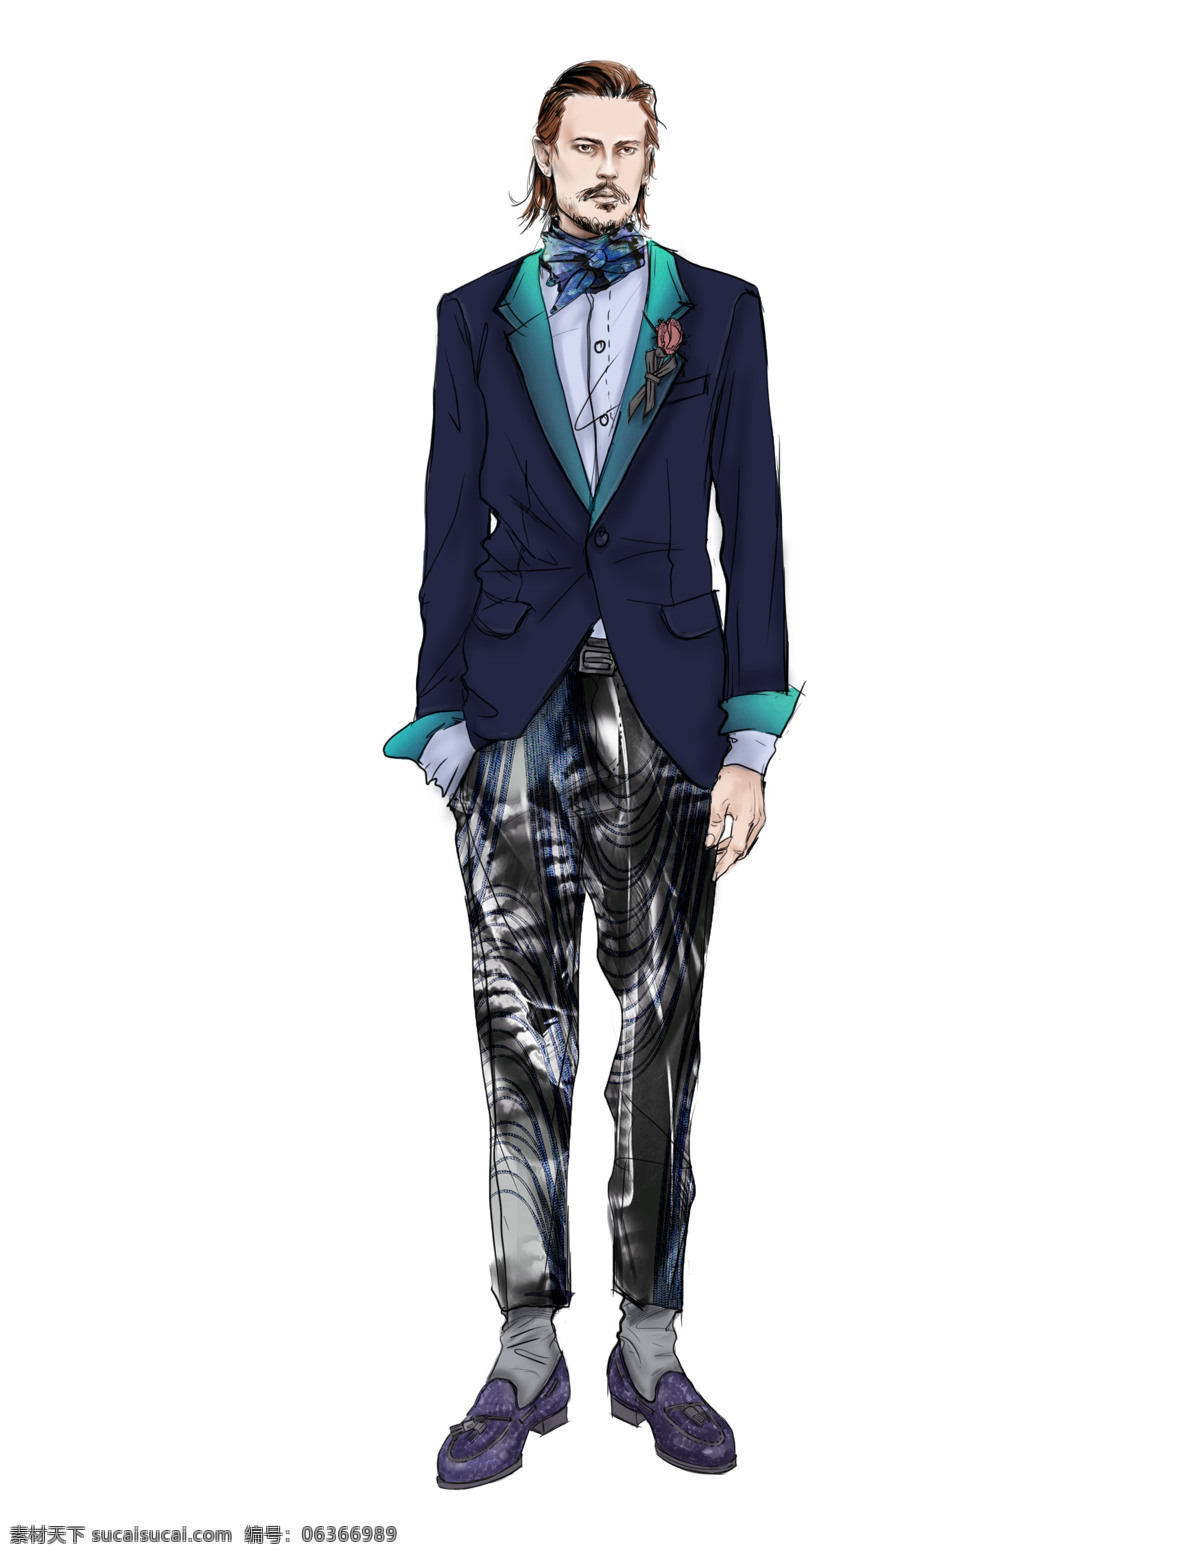 时尚 绅士 深蓝色 西装 男装 效果图 服装设计 花纹裤子 男装效果图 时尚男装